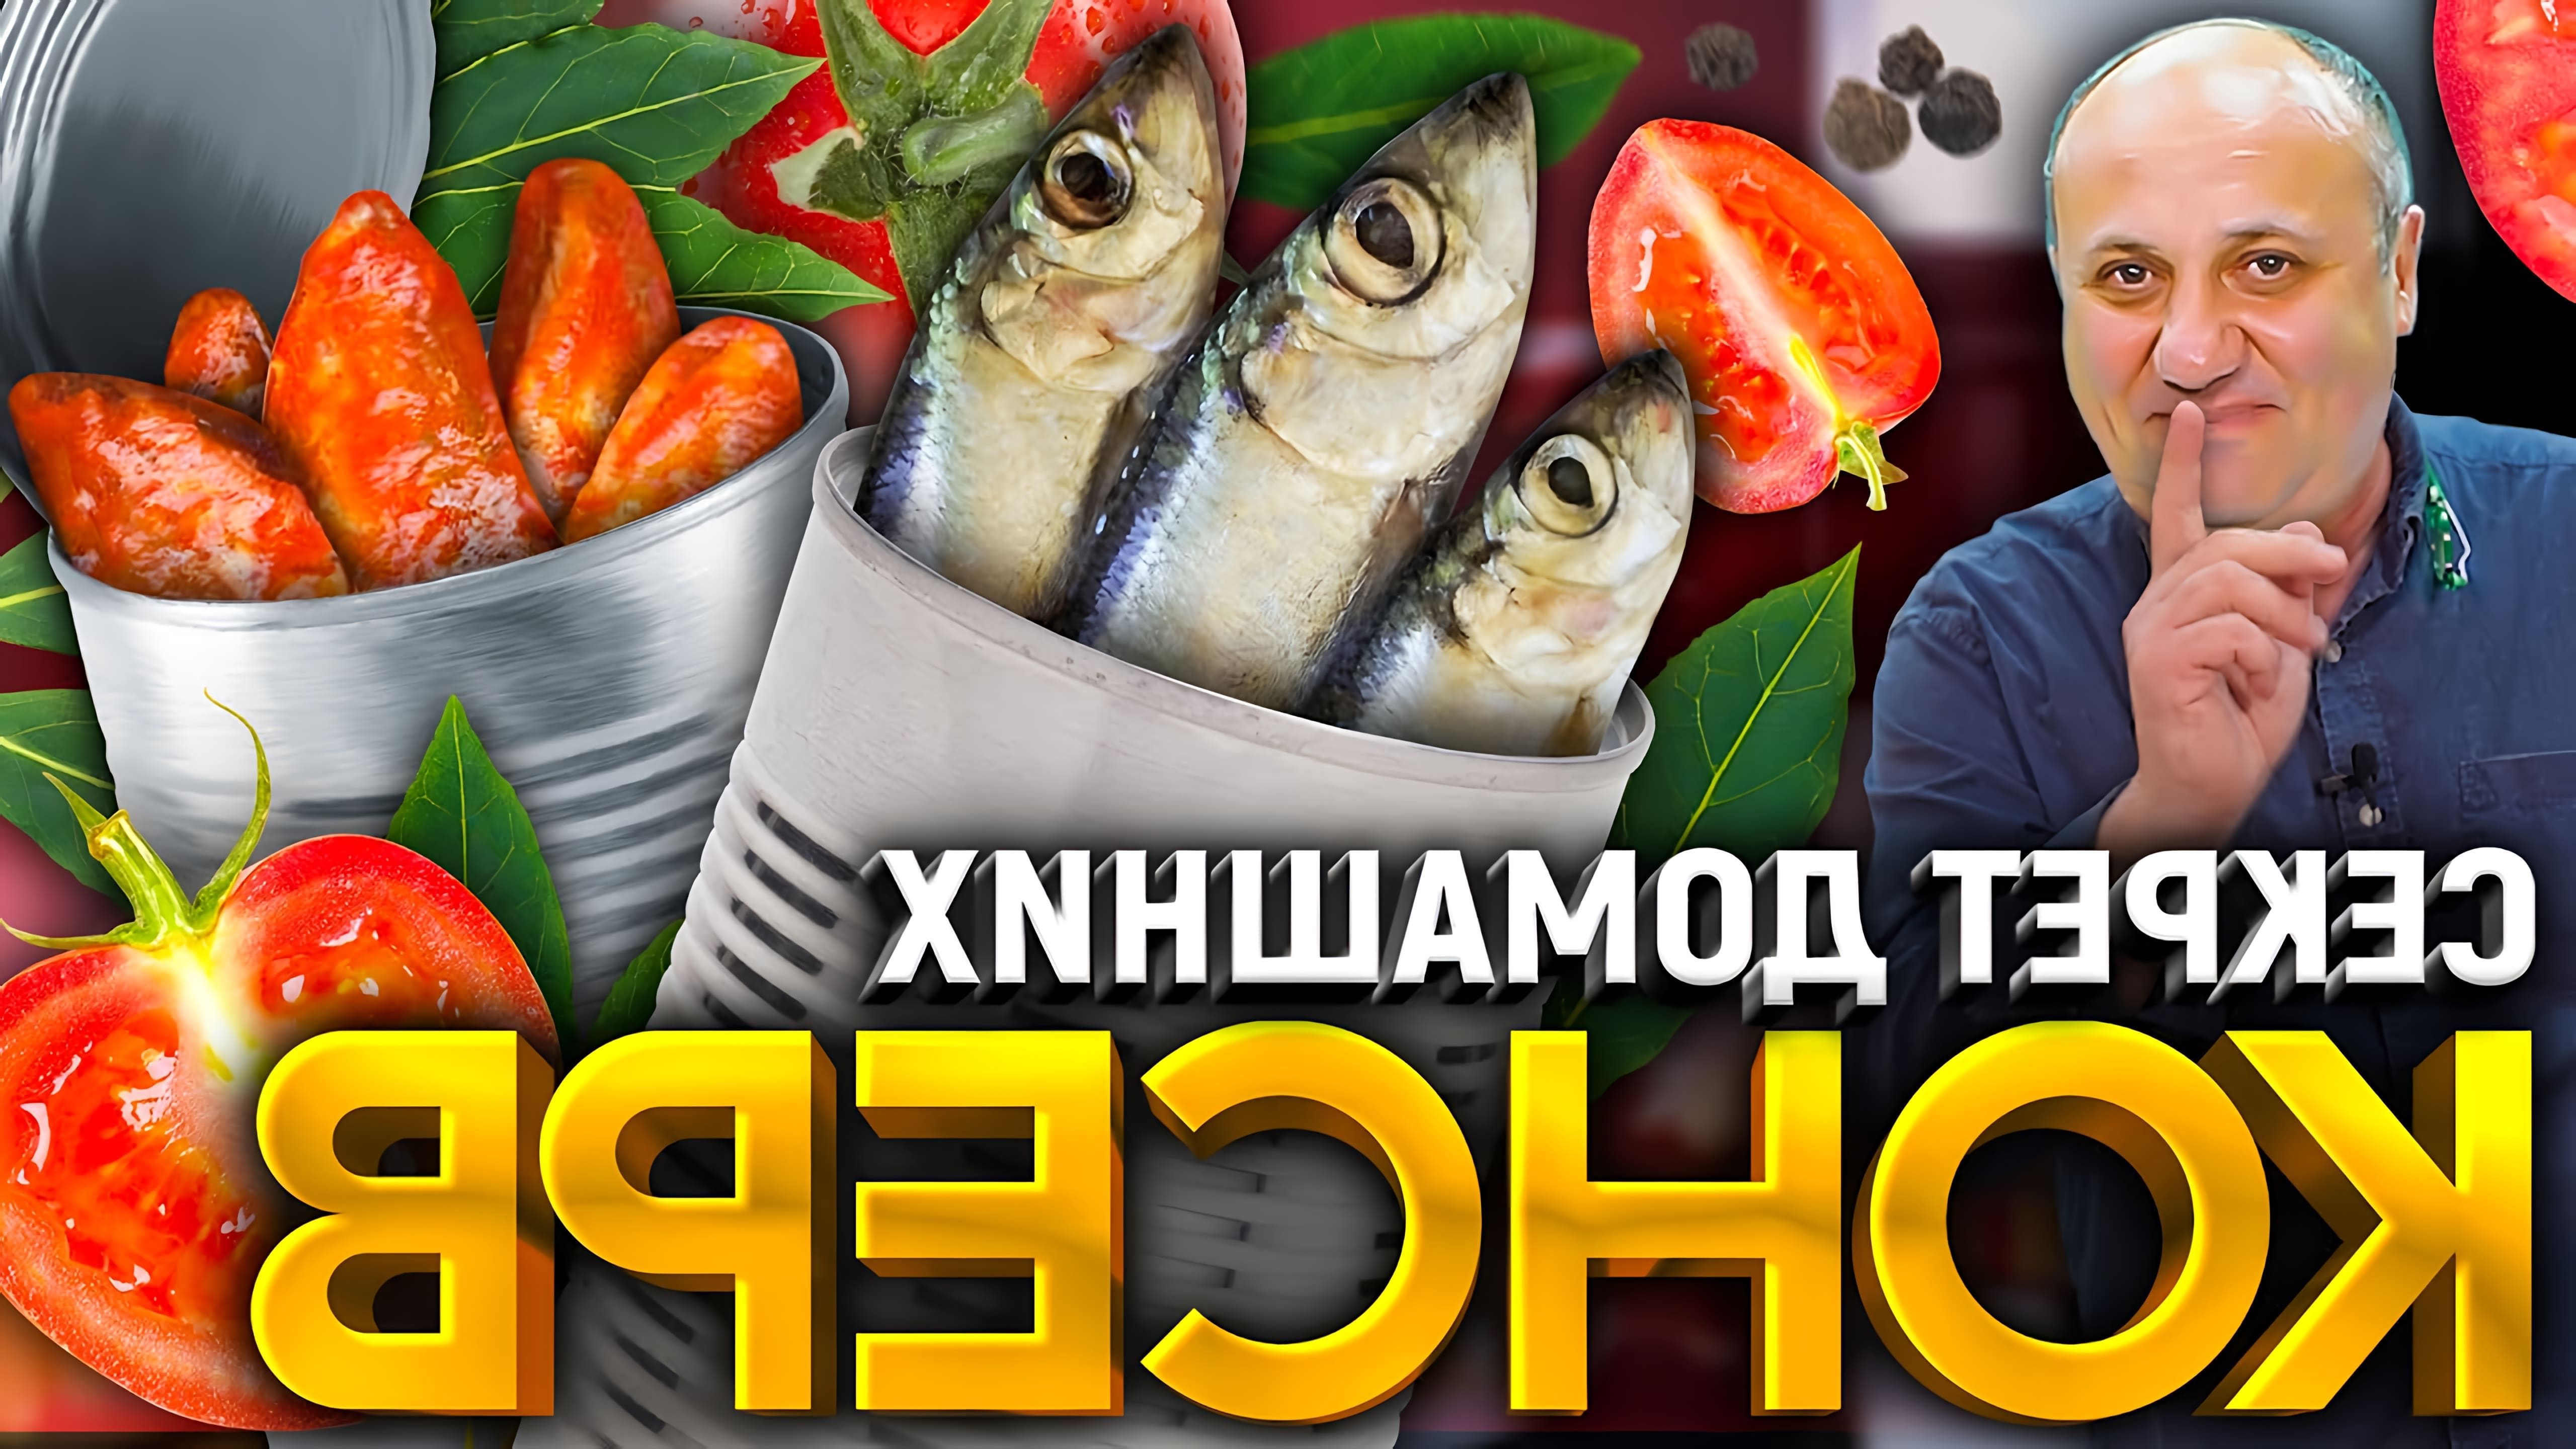 Шеф-повар Илья Лазерсон показывает два способа приготовления домашних консервов из рыбы с использованием скороварки